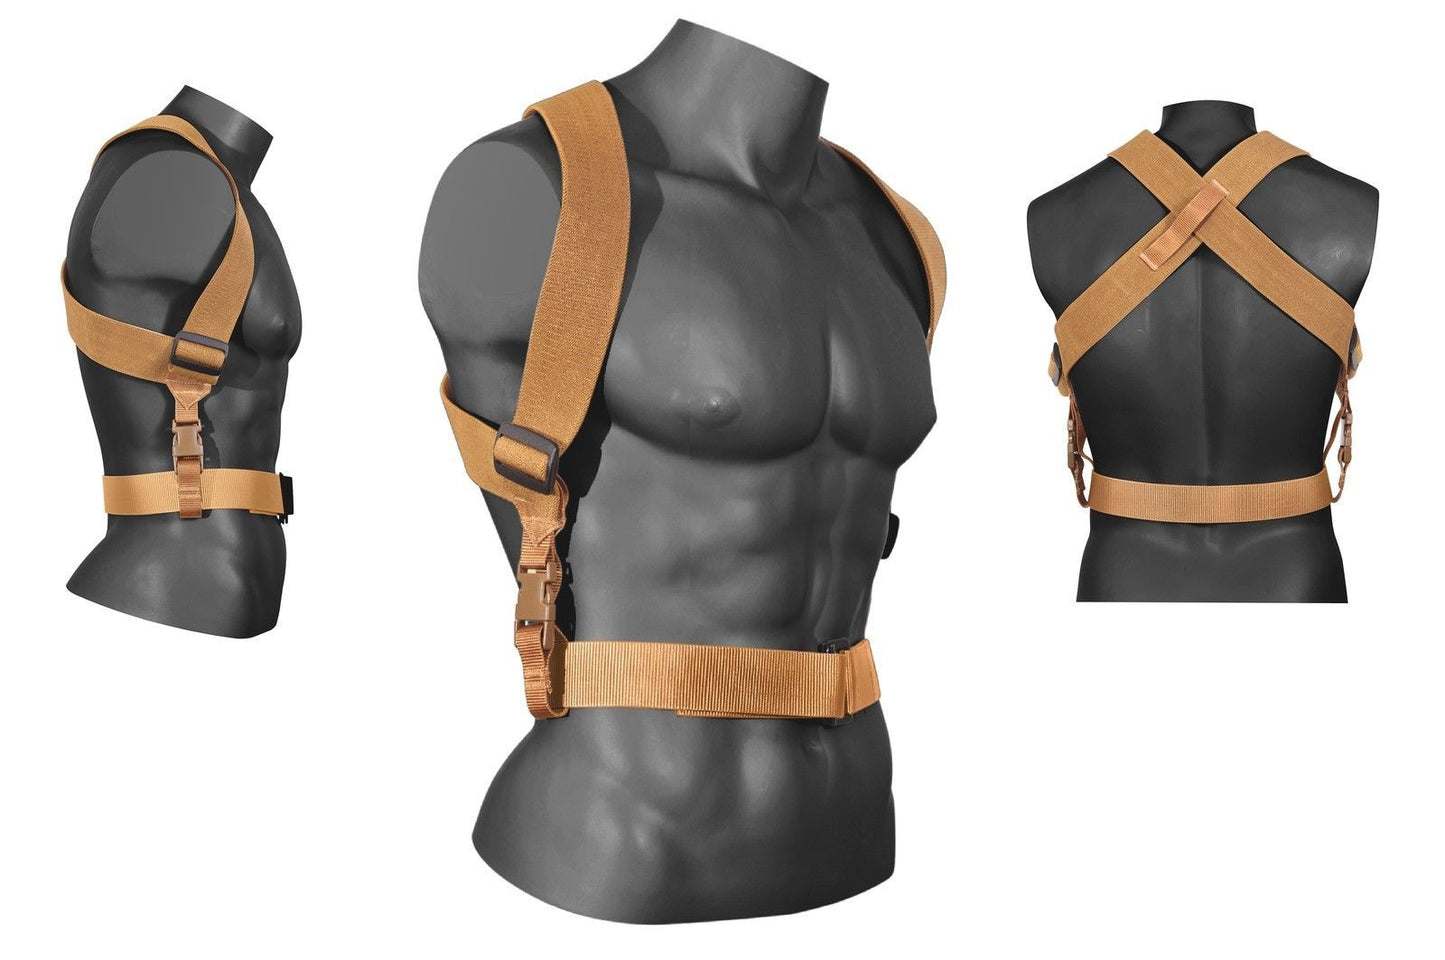 Tactical Combat Suspenders Adjustable Coyote Brown Duty Gear Support